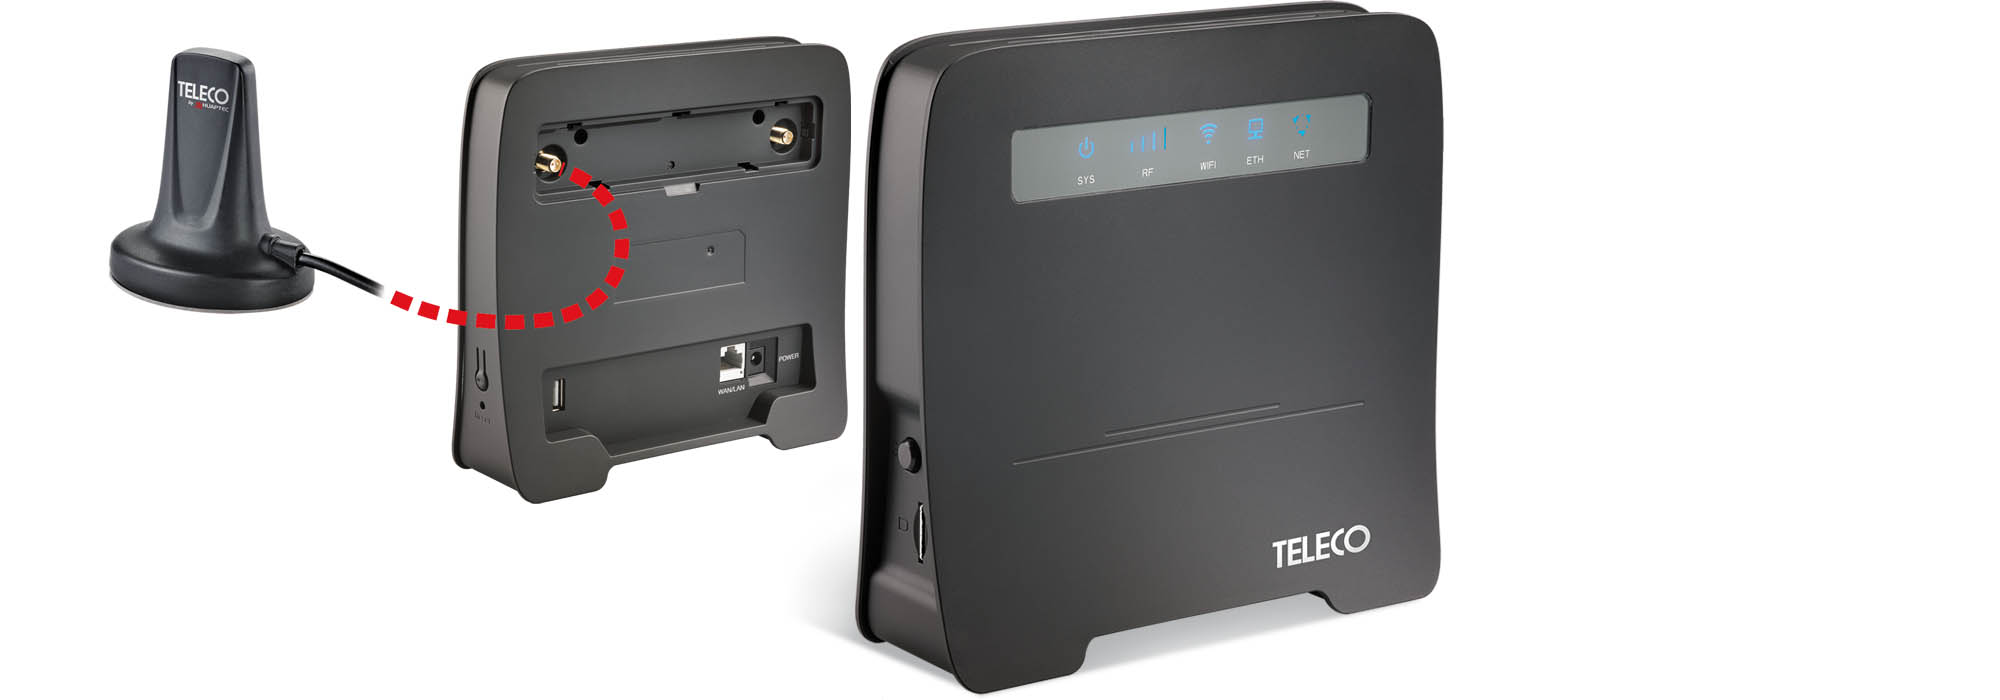 WiFi VAN T400 – Der Router für mehr Empfang auf Reisen